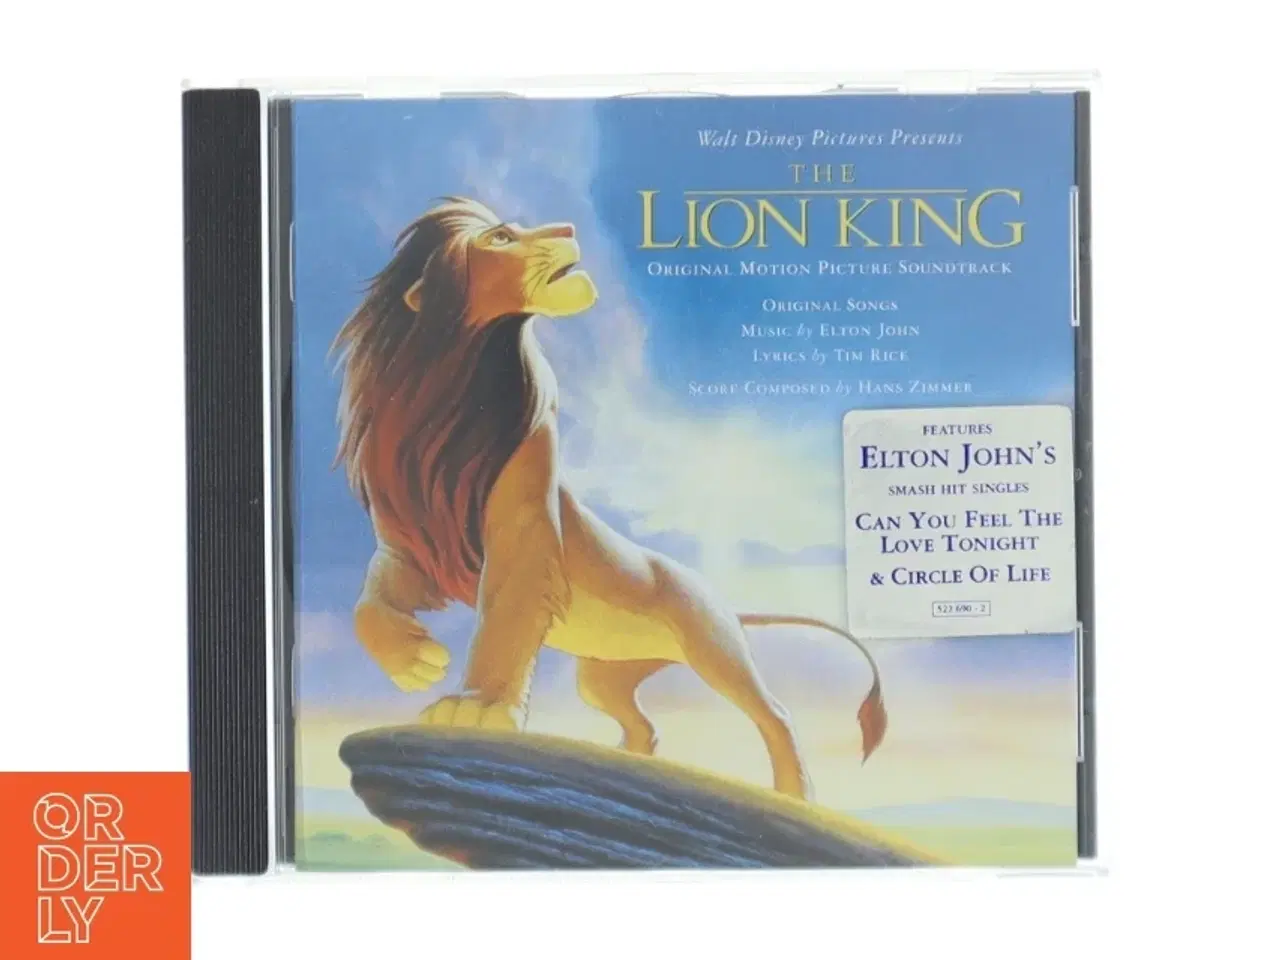 Billede 1 - Løvernes Konge Soundtrack CD fra Disney